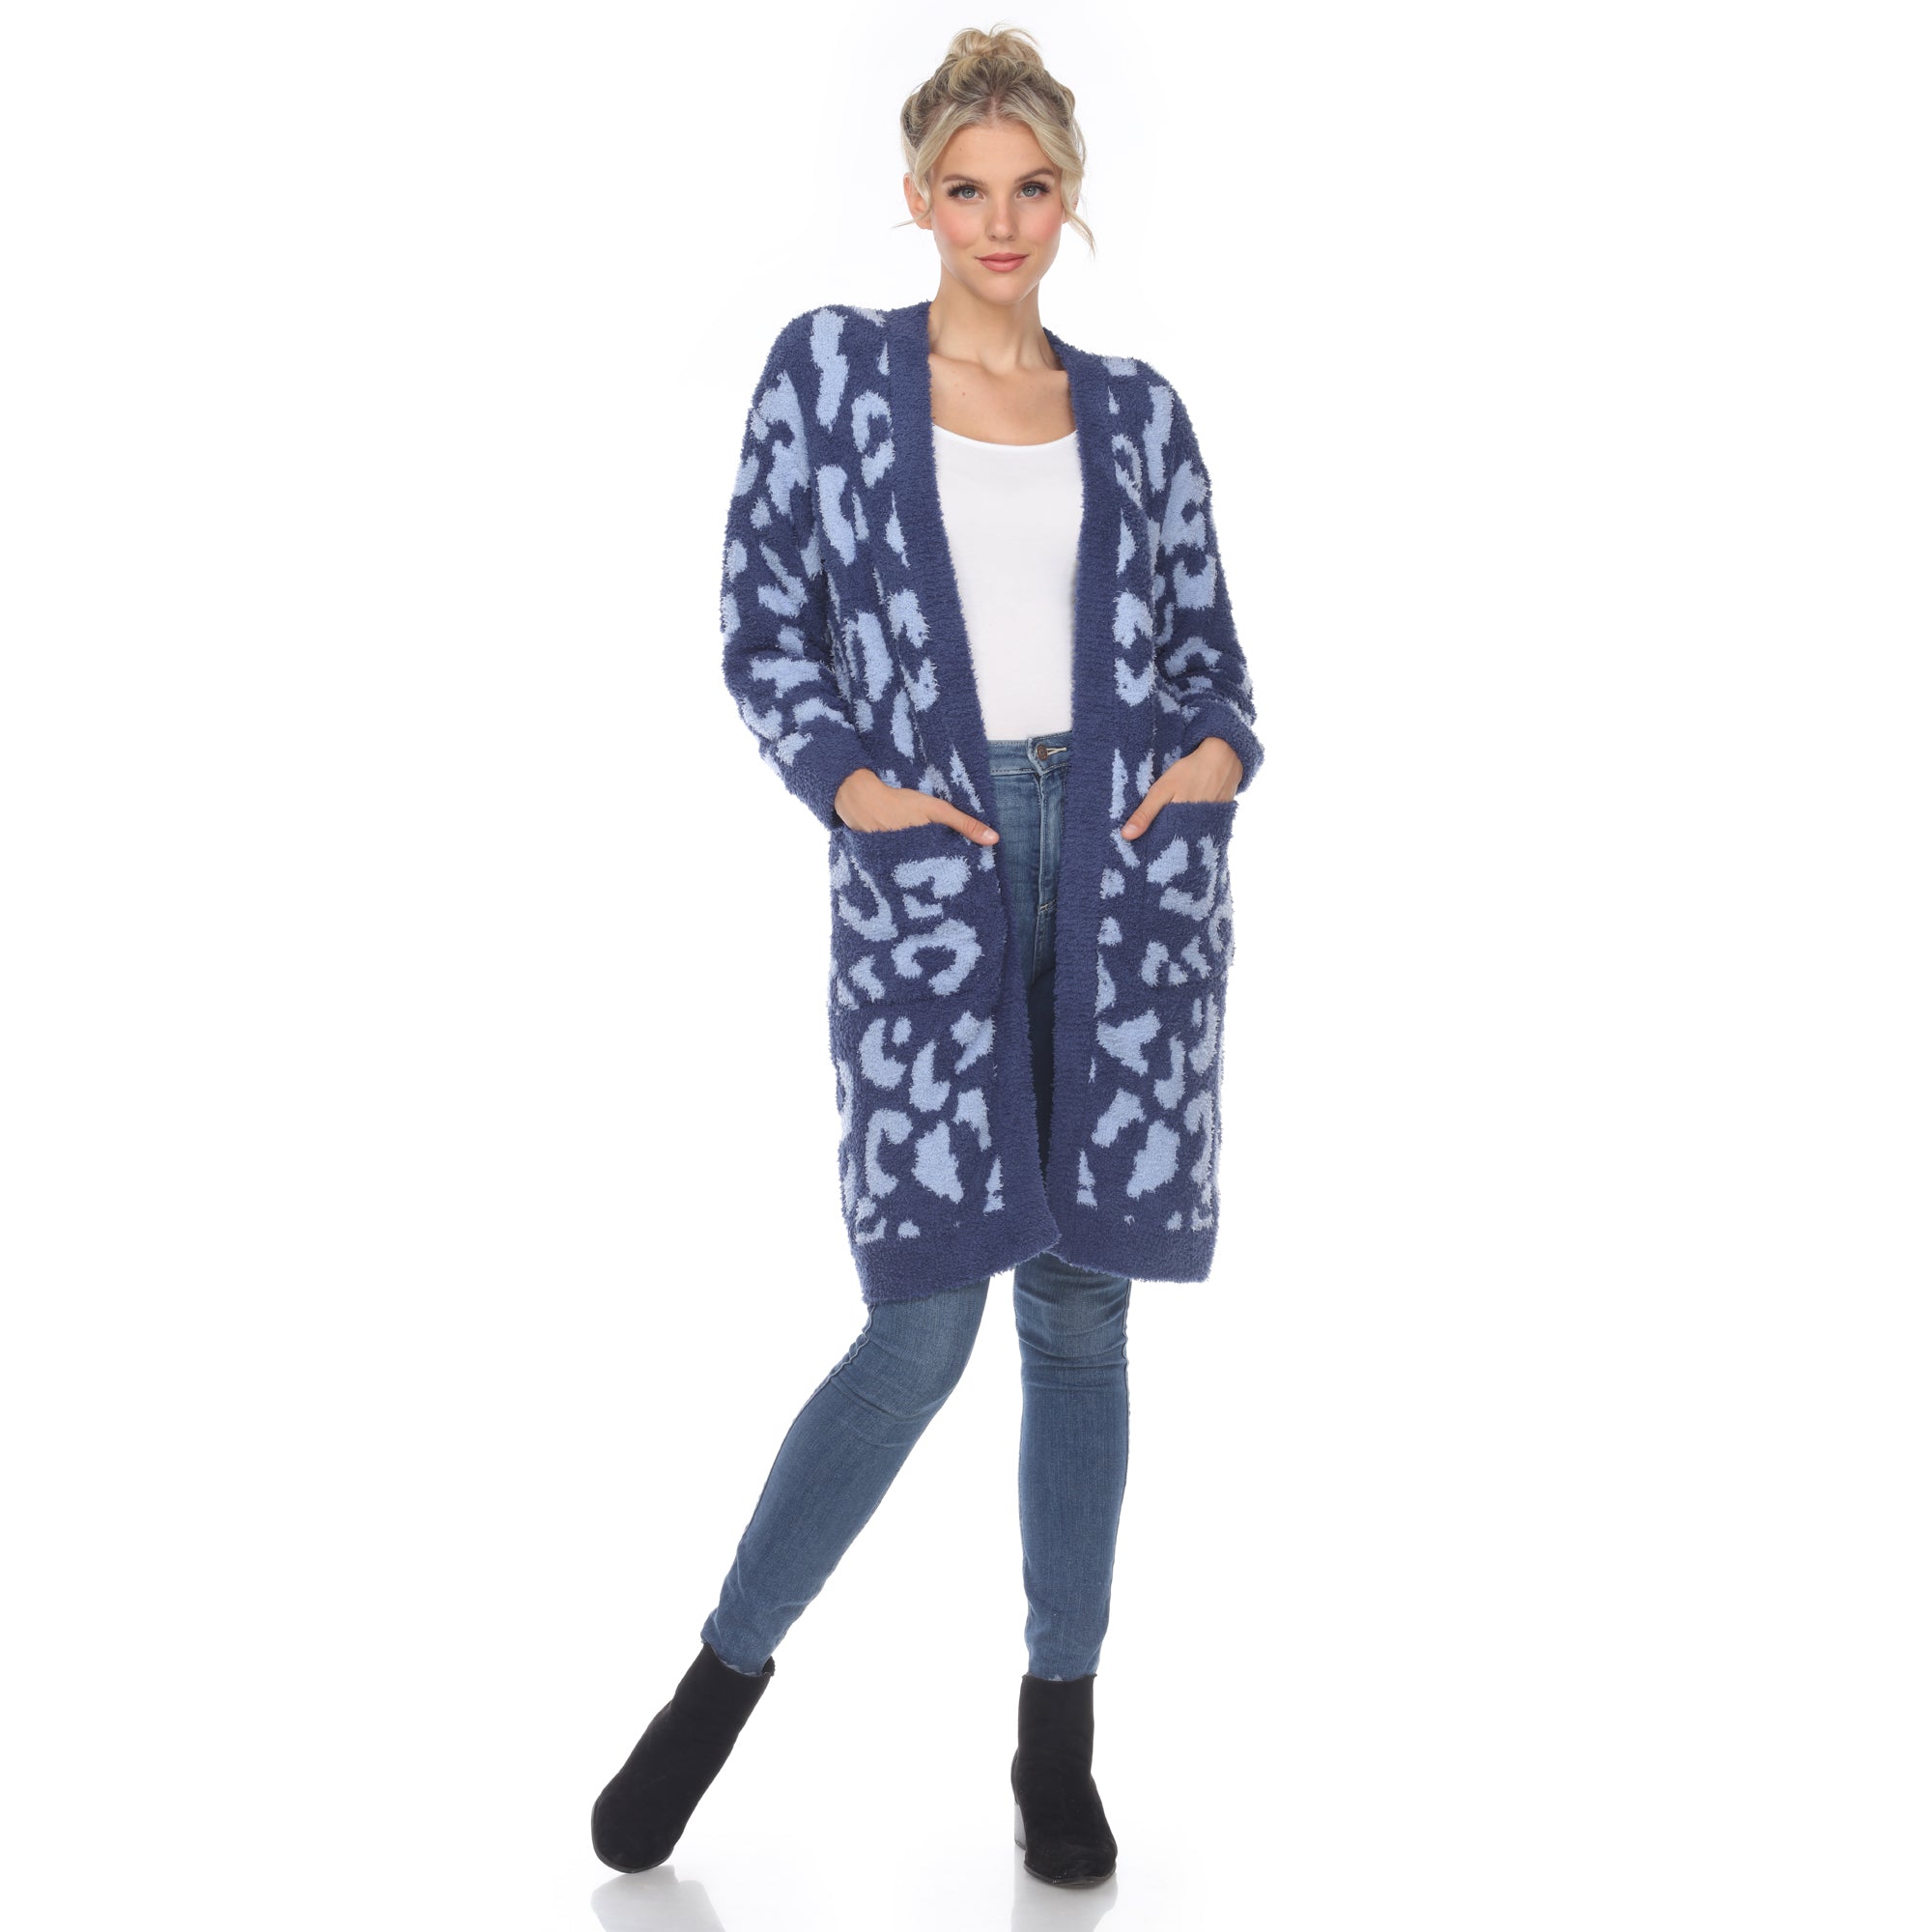 Women's Leopard Print Open Front Sherpa Coat - DressbarnCoats & Jackets